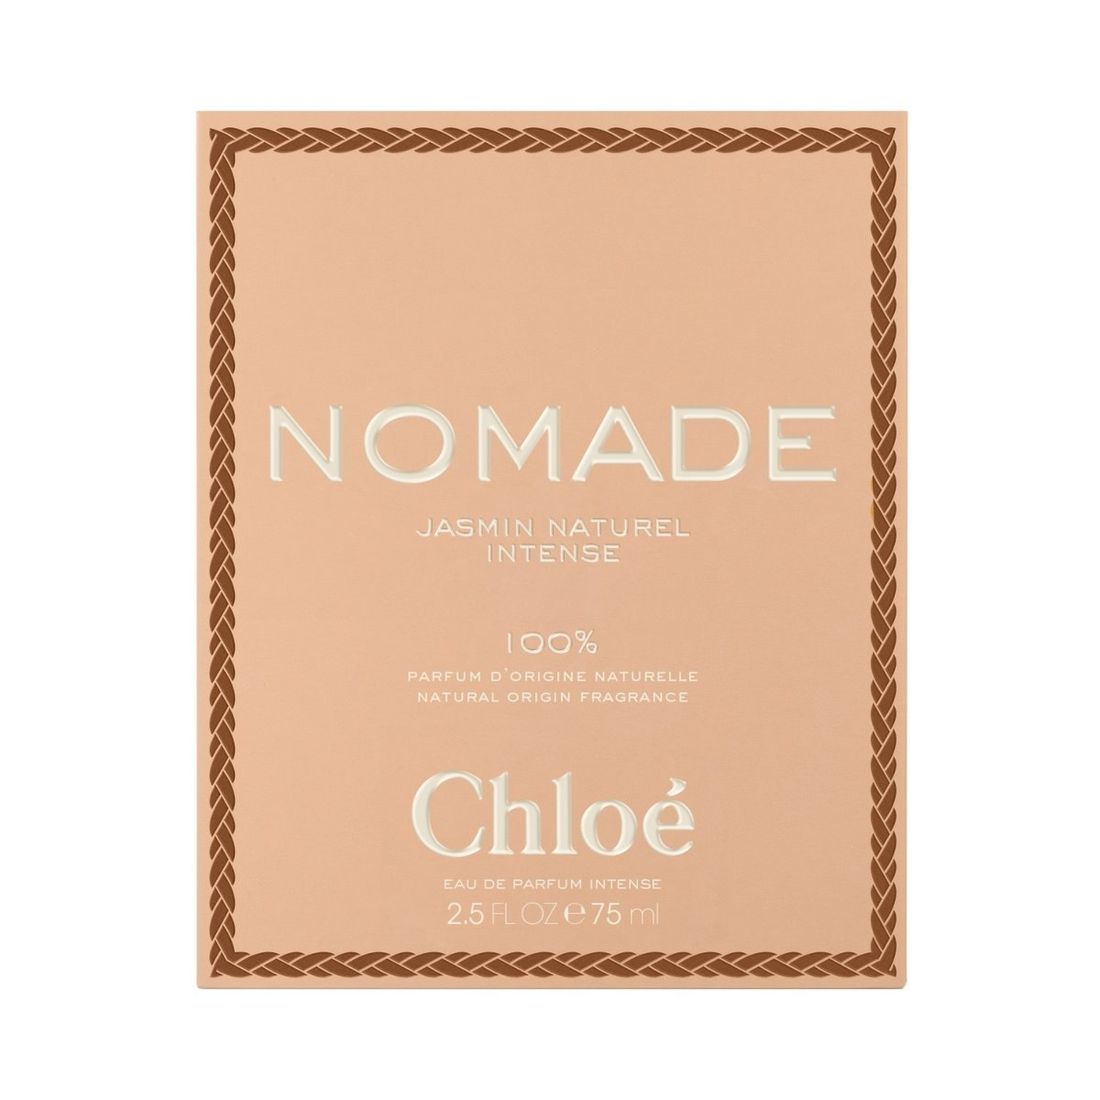 chloe nomade jasmin naturel intense woda perfumowana 75 ml   